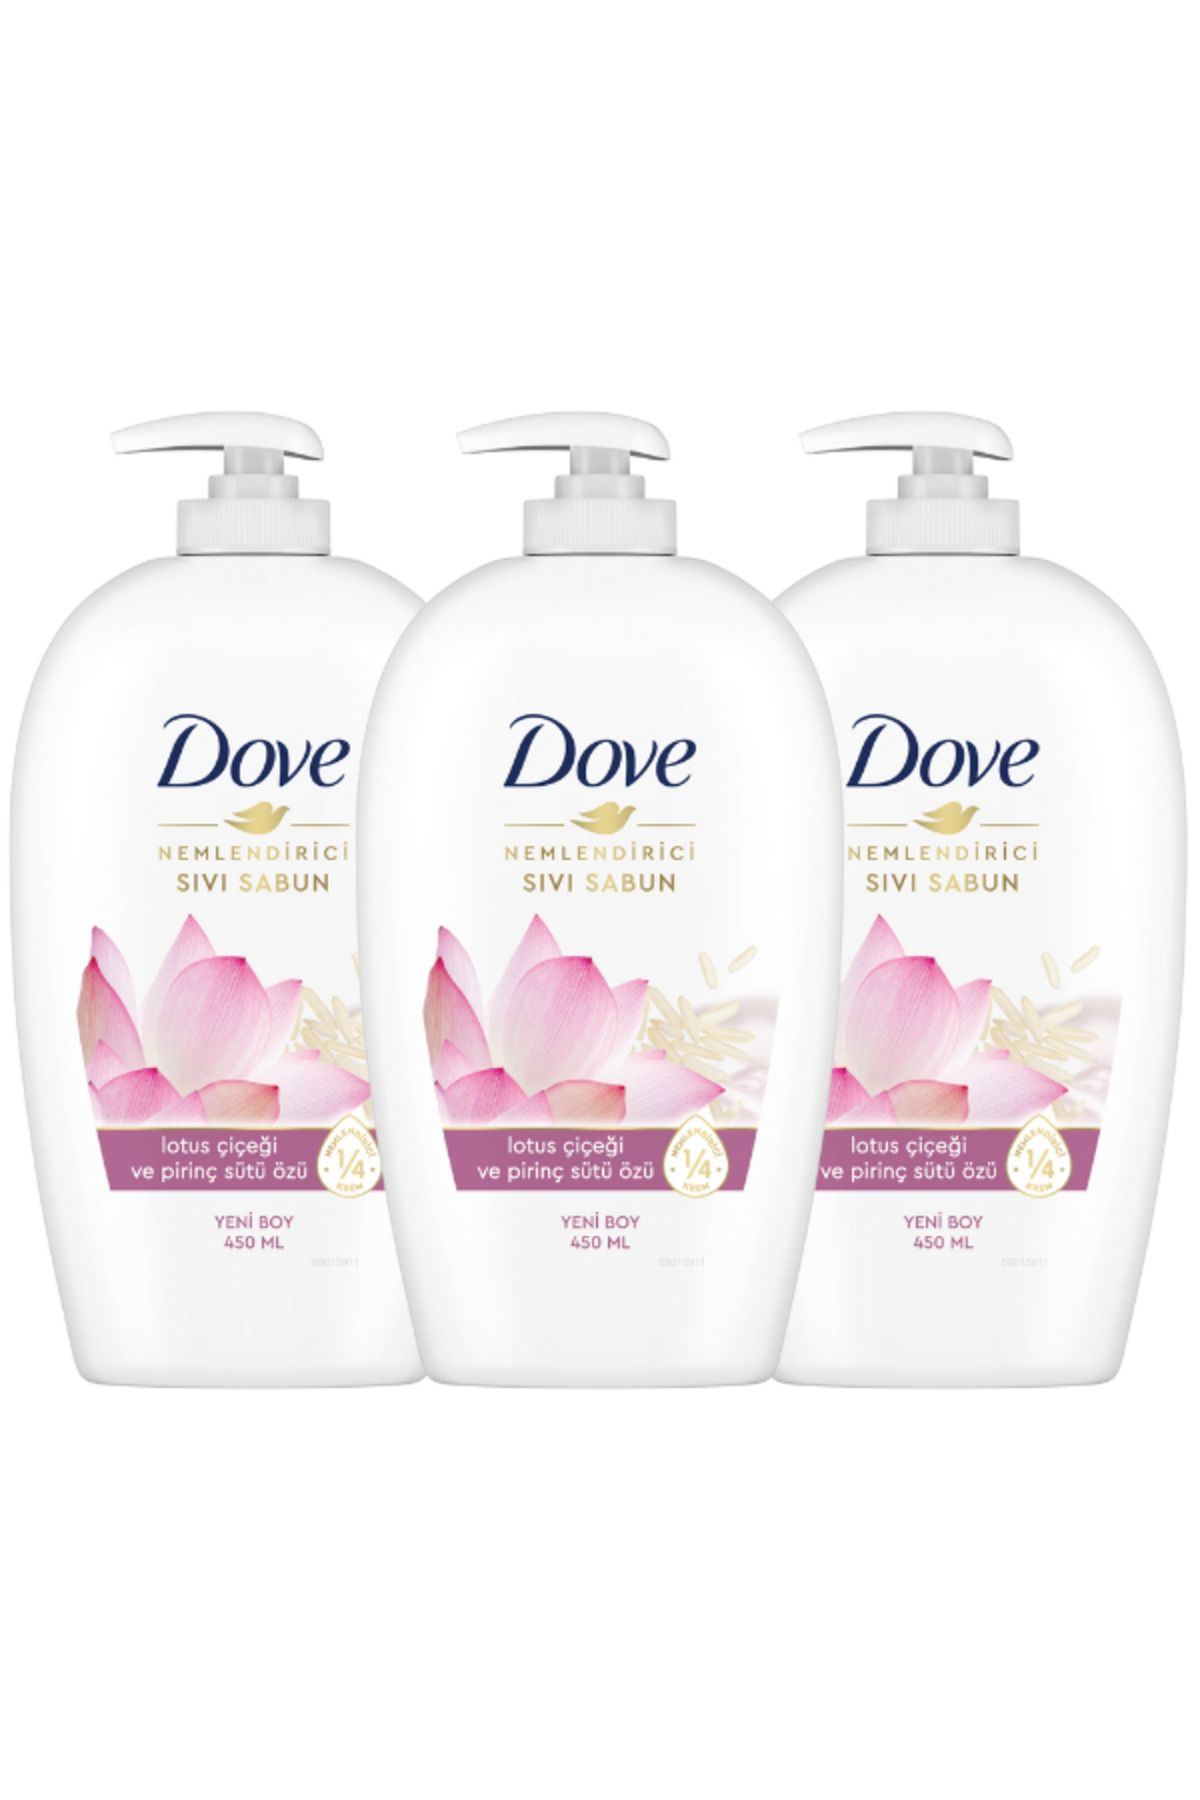 Dove Nemlendirici Sıvı Sabun Lotus Çiçeği Ve Pirinç Sütü Özü 450 Ml x 3 Adet